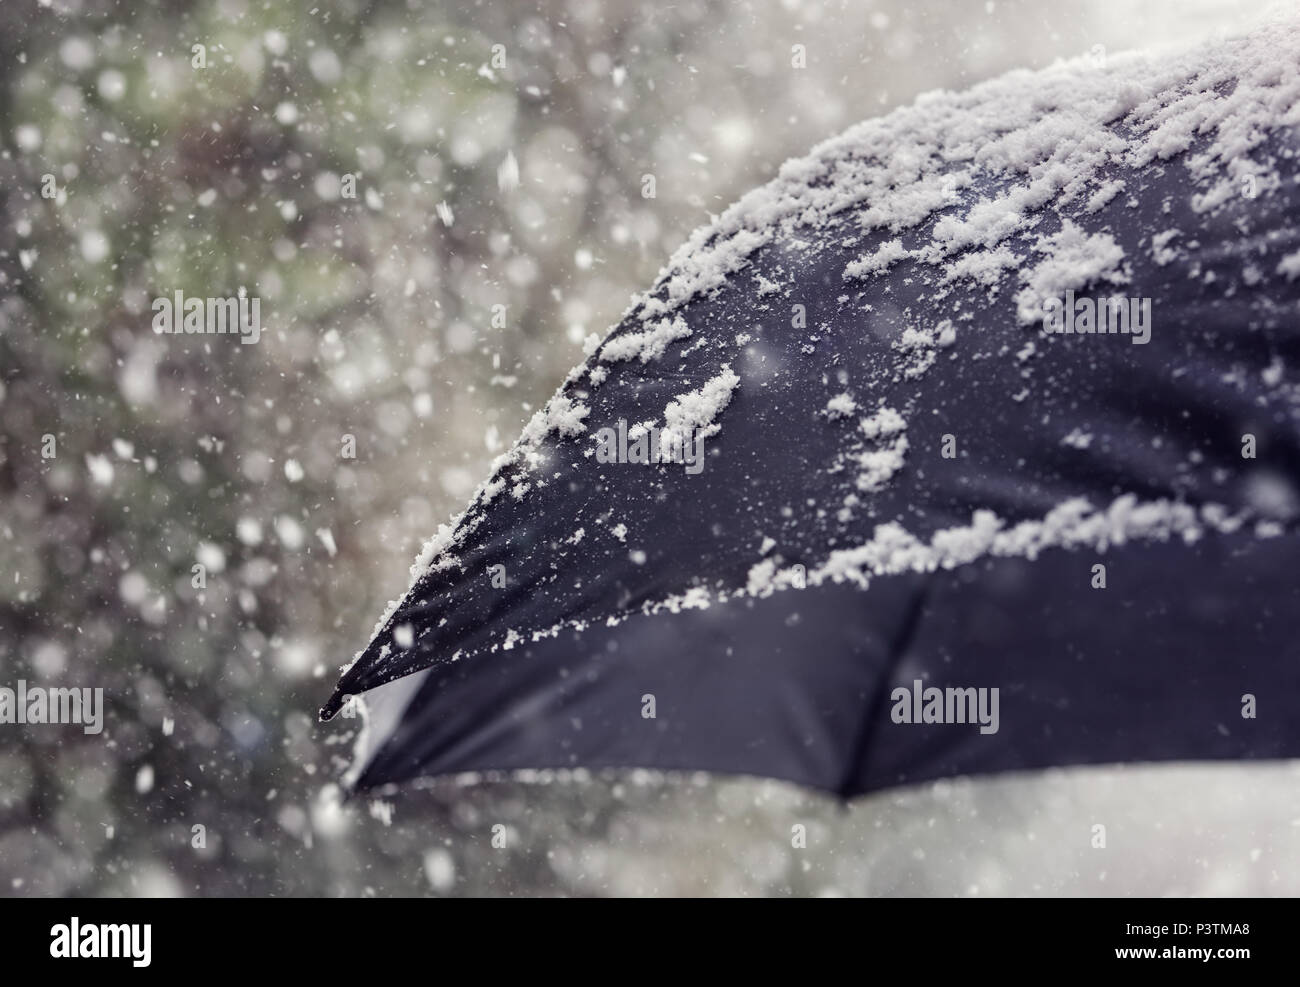 Schneeflocken fallen auf einen schwarzen Regenschirm Konzept für schlechtes Wetter, Winter oder schneit Blizzard Stockfoto